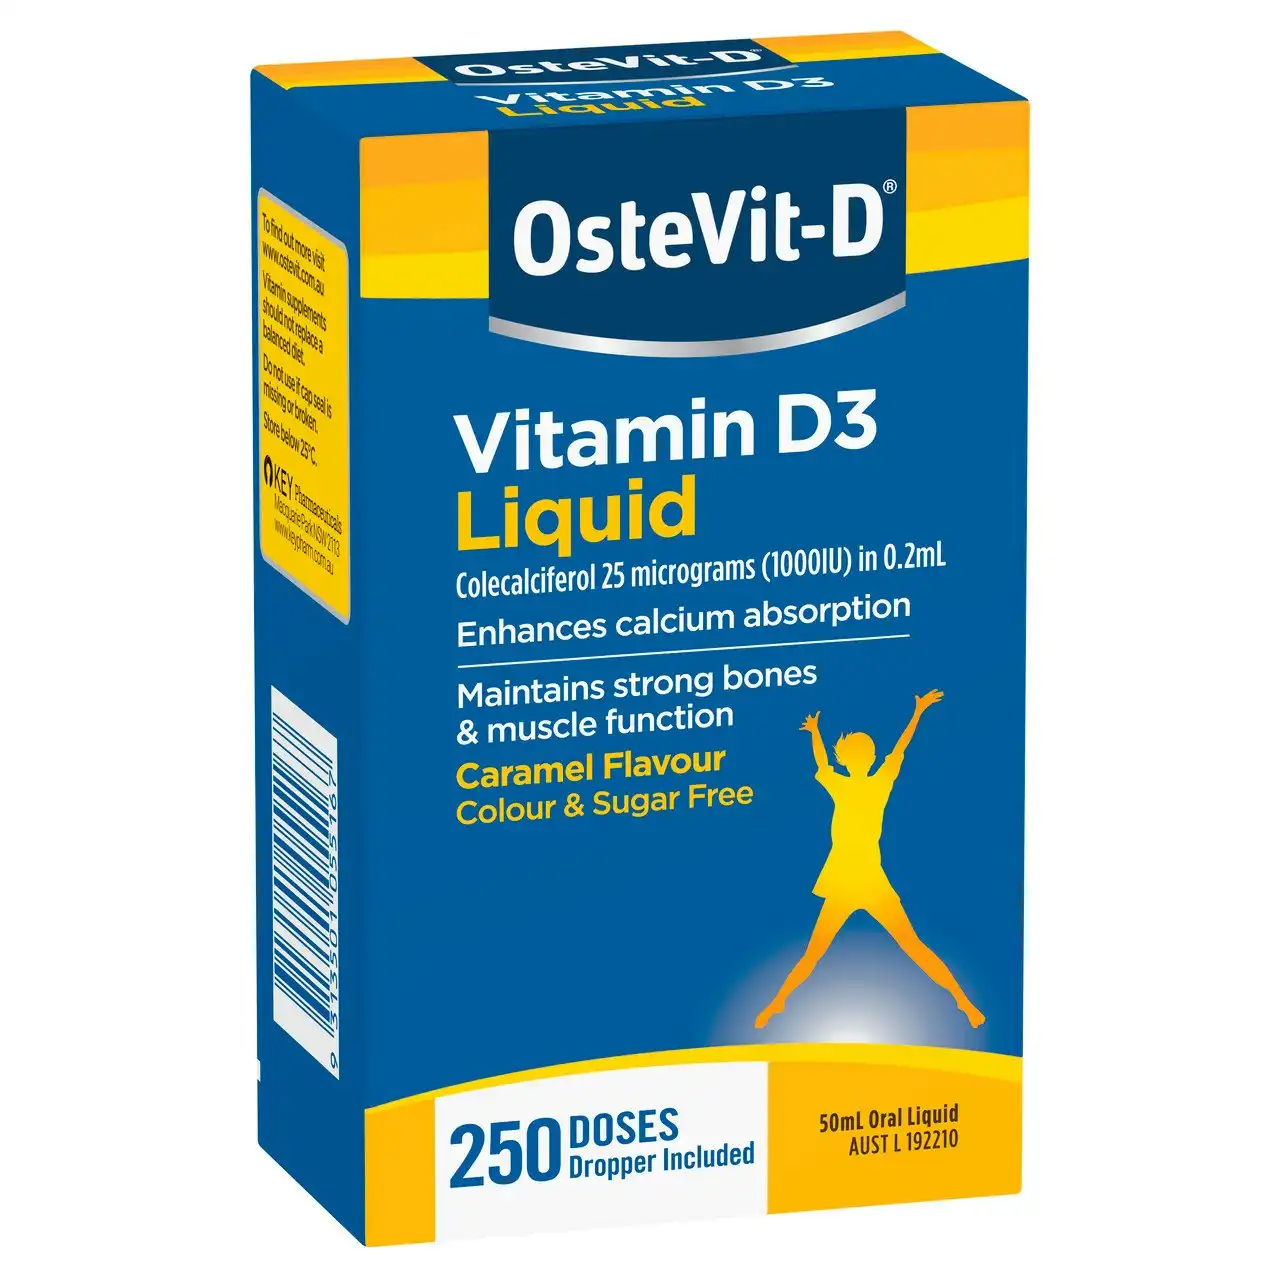 OsteVit-D Vitamin D3 Liquid 50mL